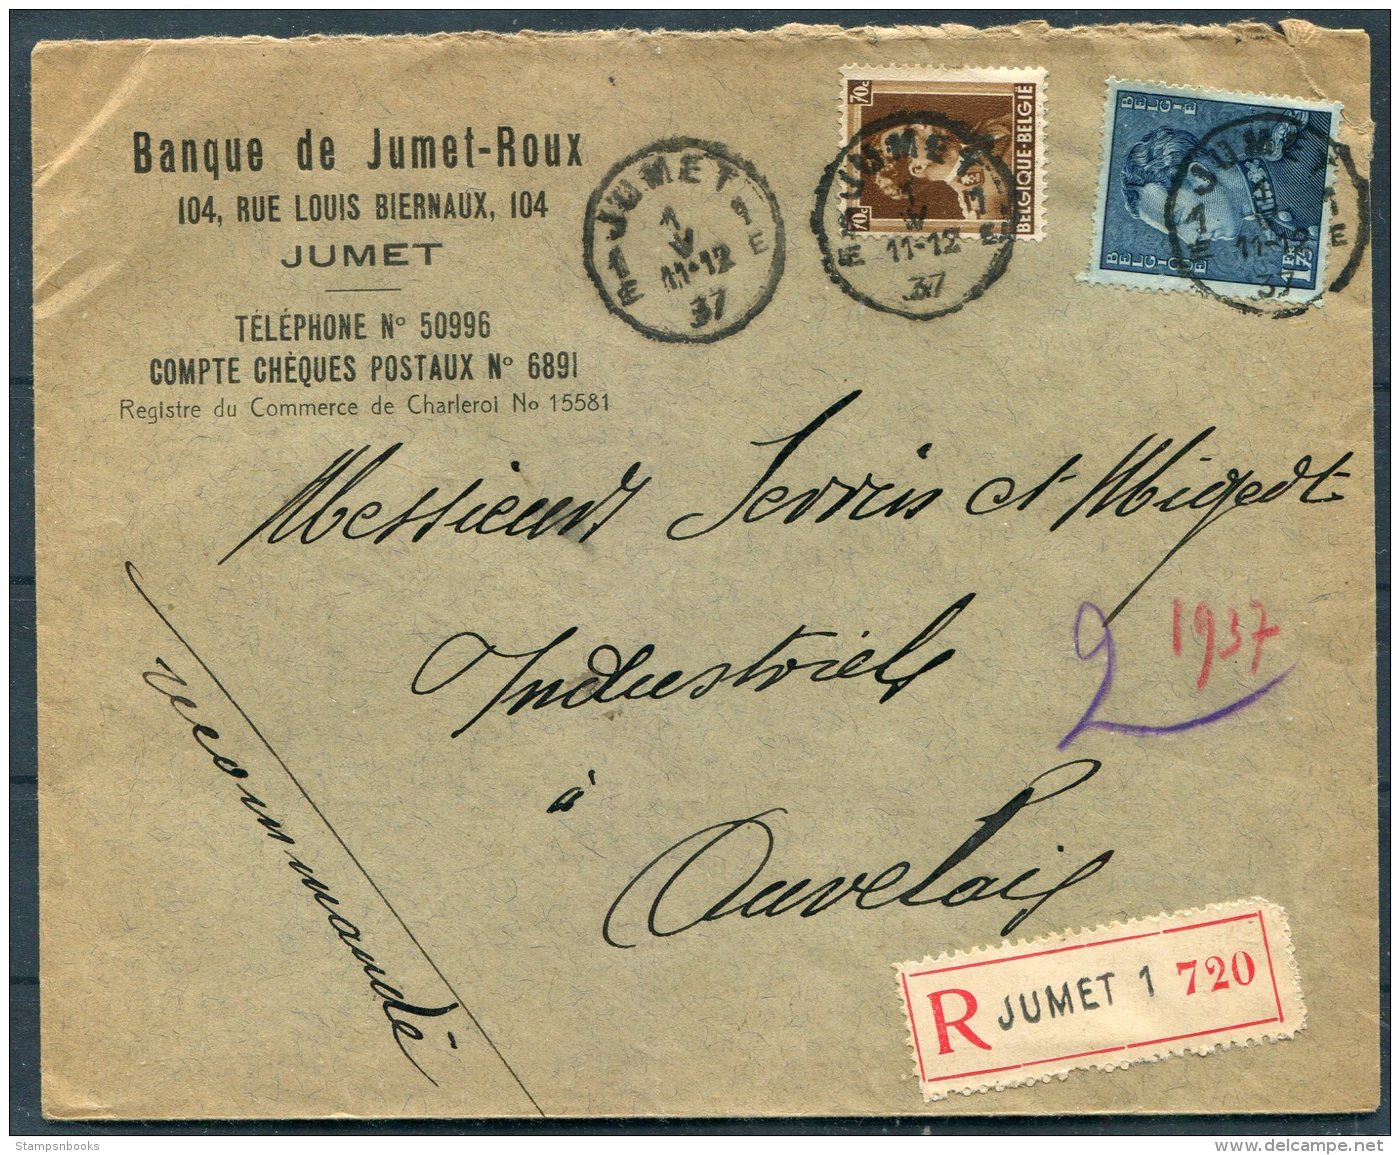 1937 Belgium Banque De Jumet-Roux Registered Bank Cover - Auvelais - Covers & Documents